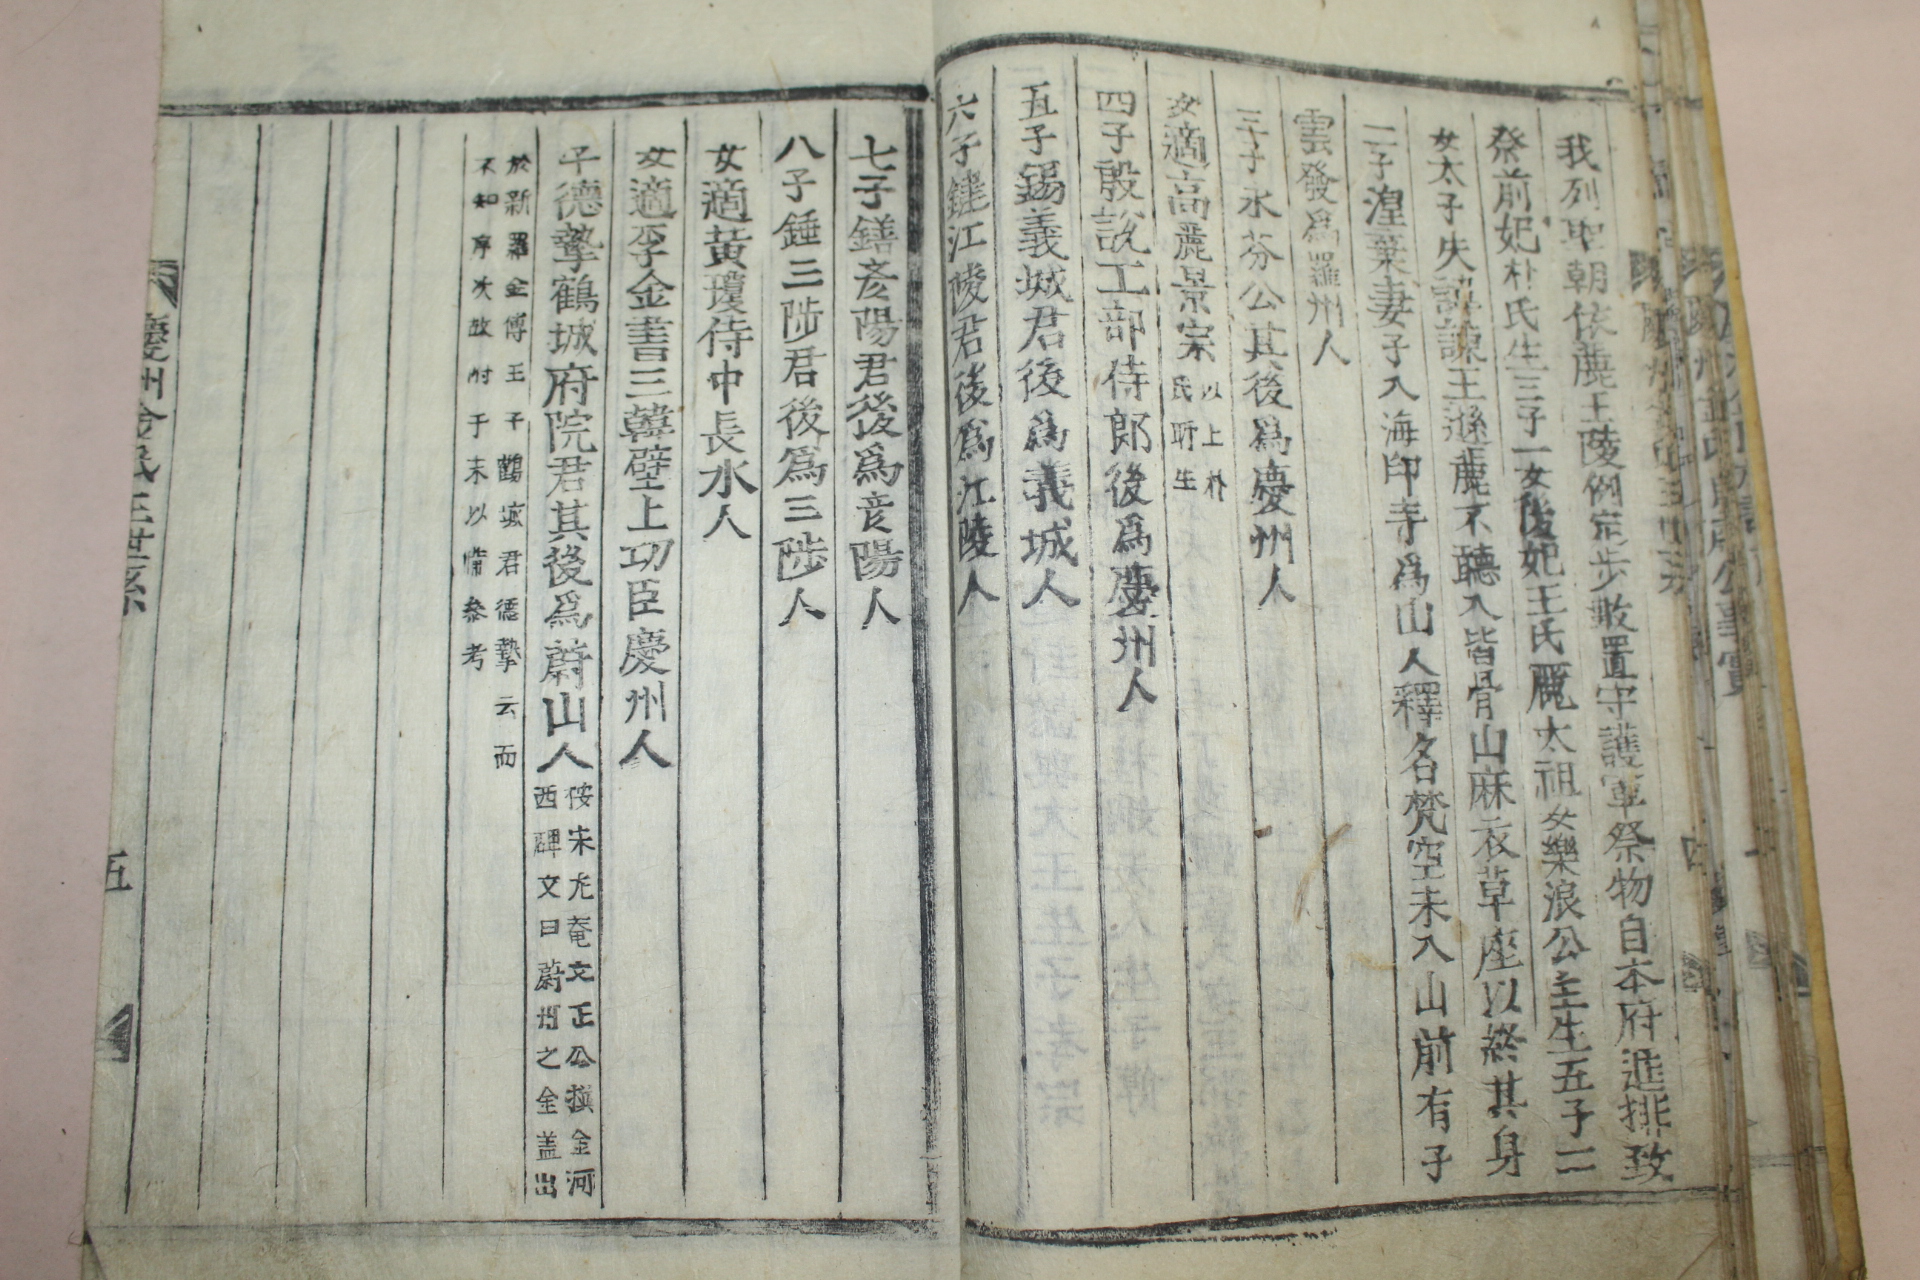 목활자본 경주김씨족보(慶州金氏族譜)권1  1책